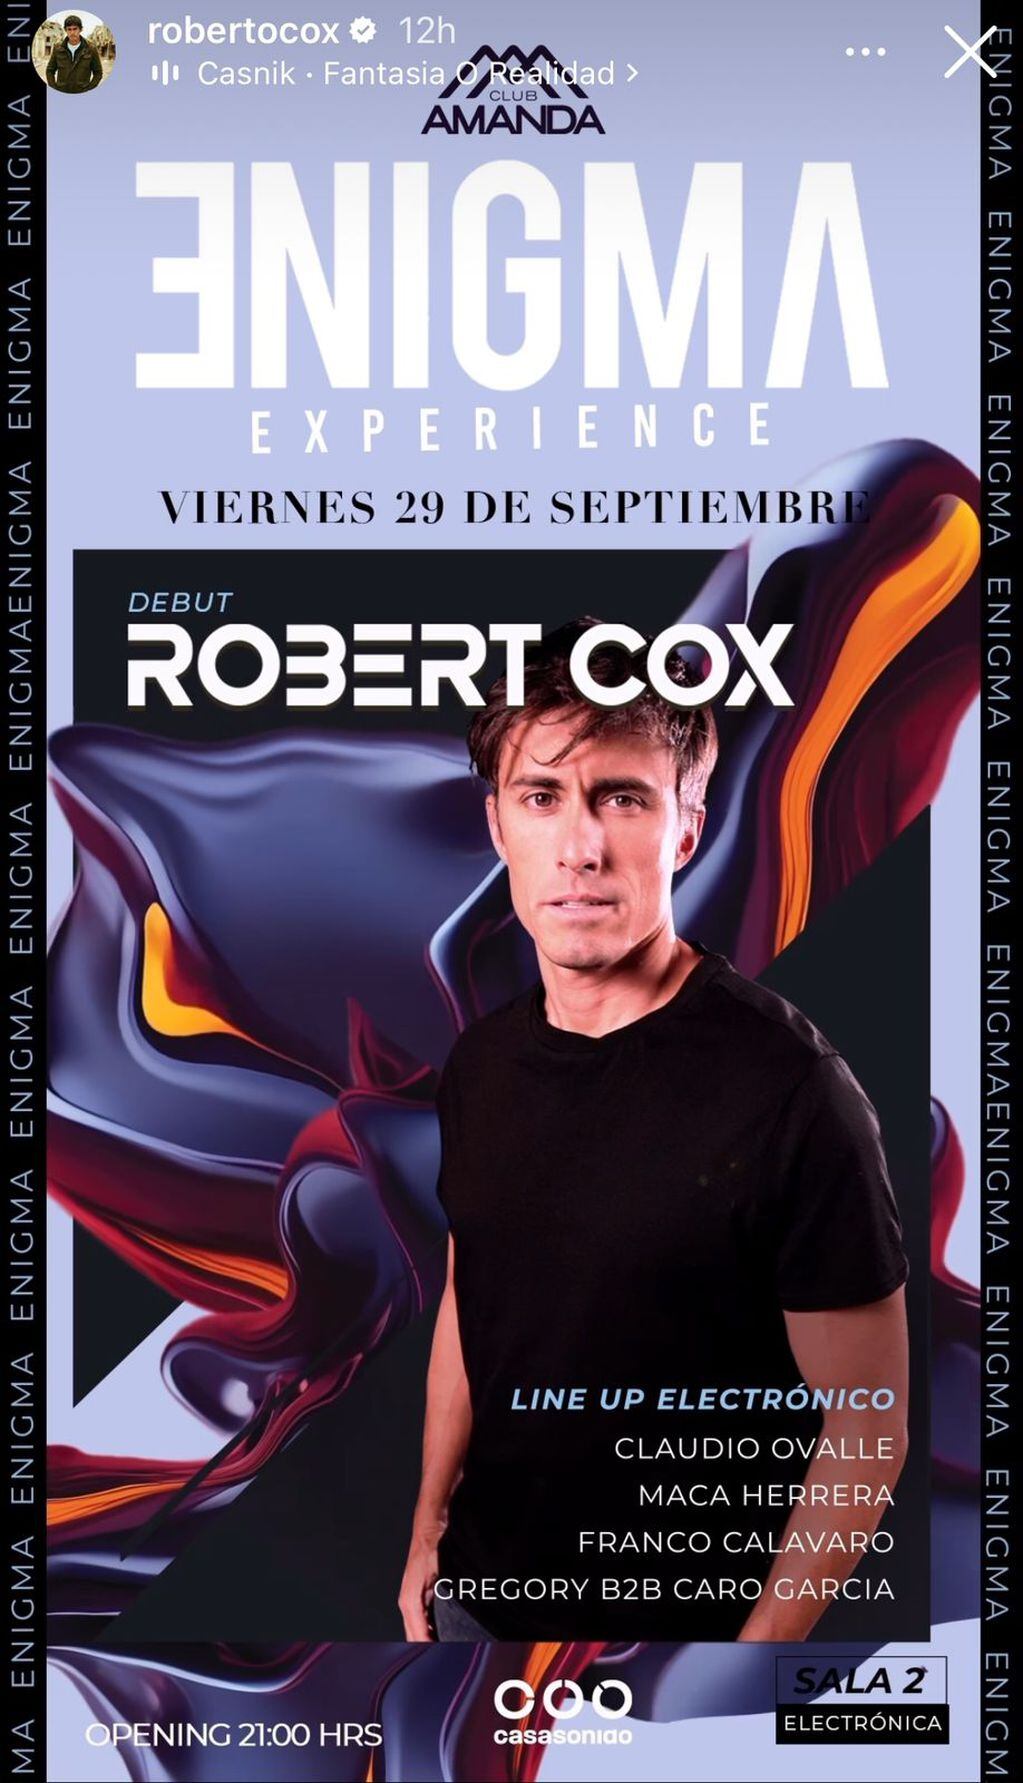 Roberto Cox debutará como DJ con su nombre artístico, "Robert Cox".